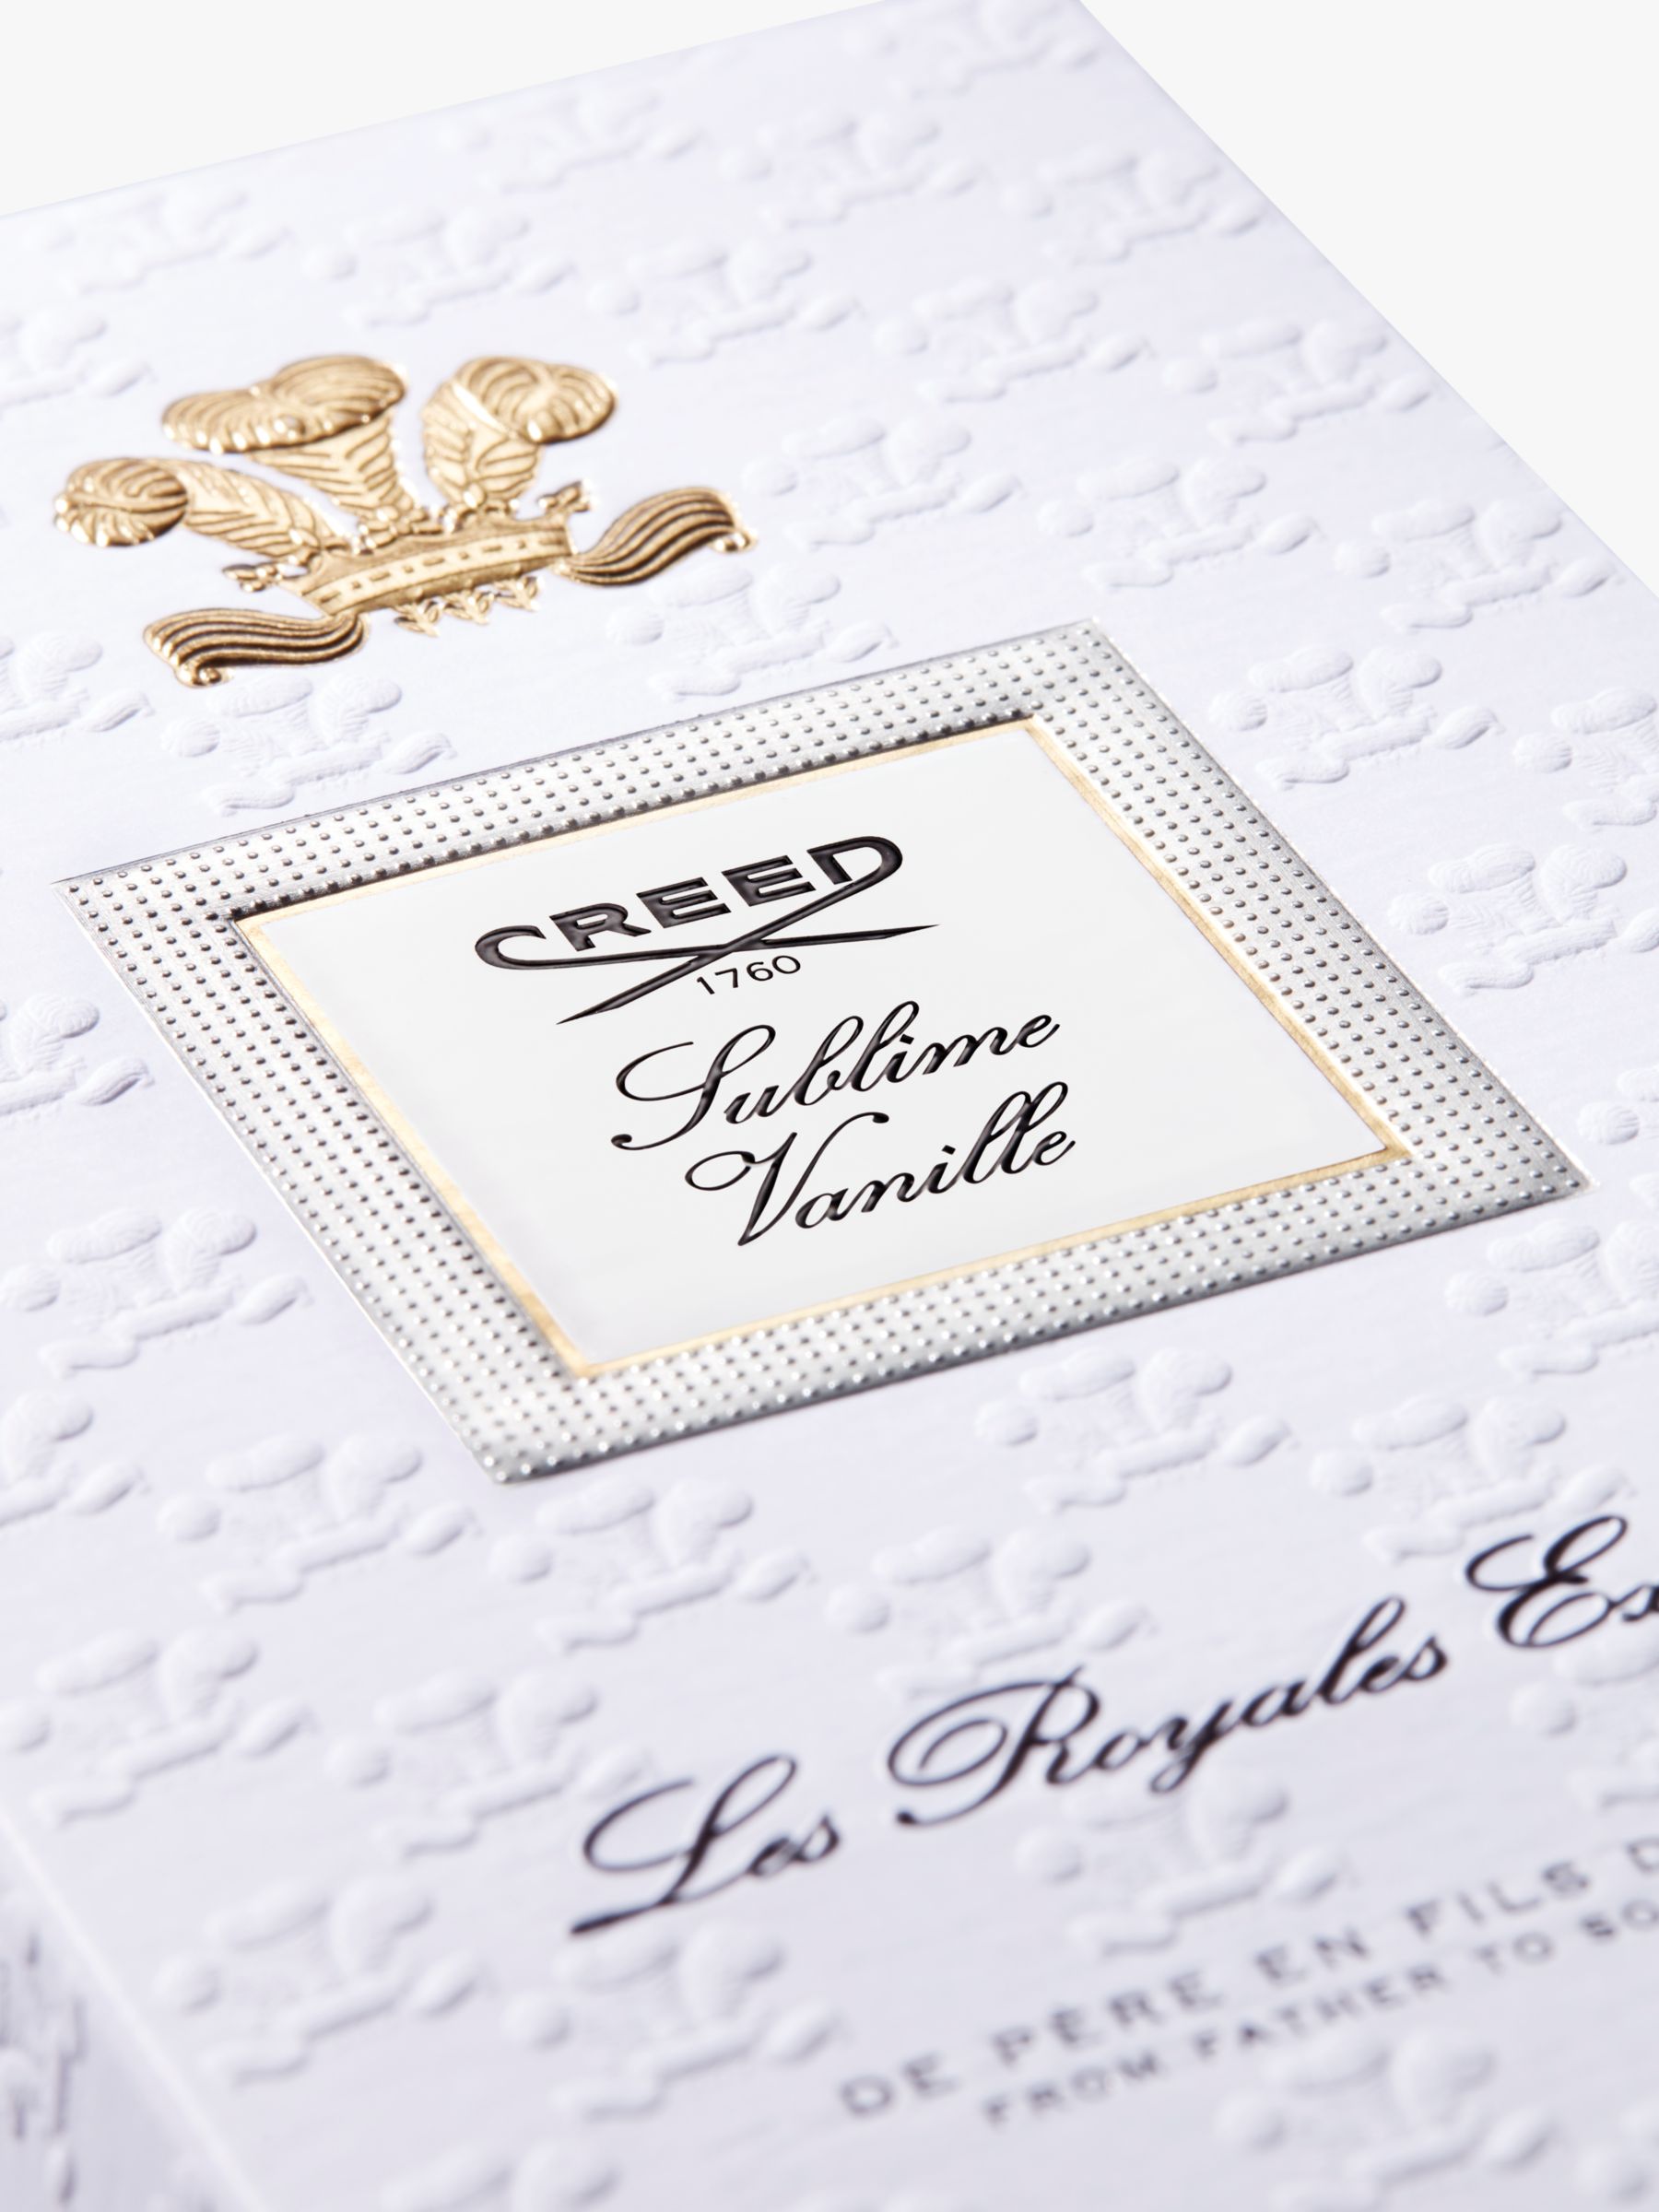 CREED Royal Exclusives Sublime Vanille Eau de Parfum, 75ml 4